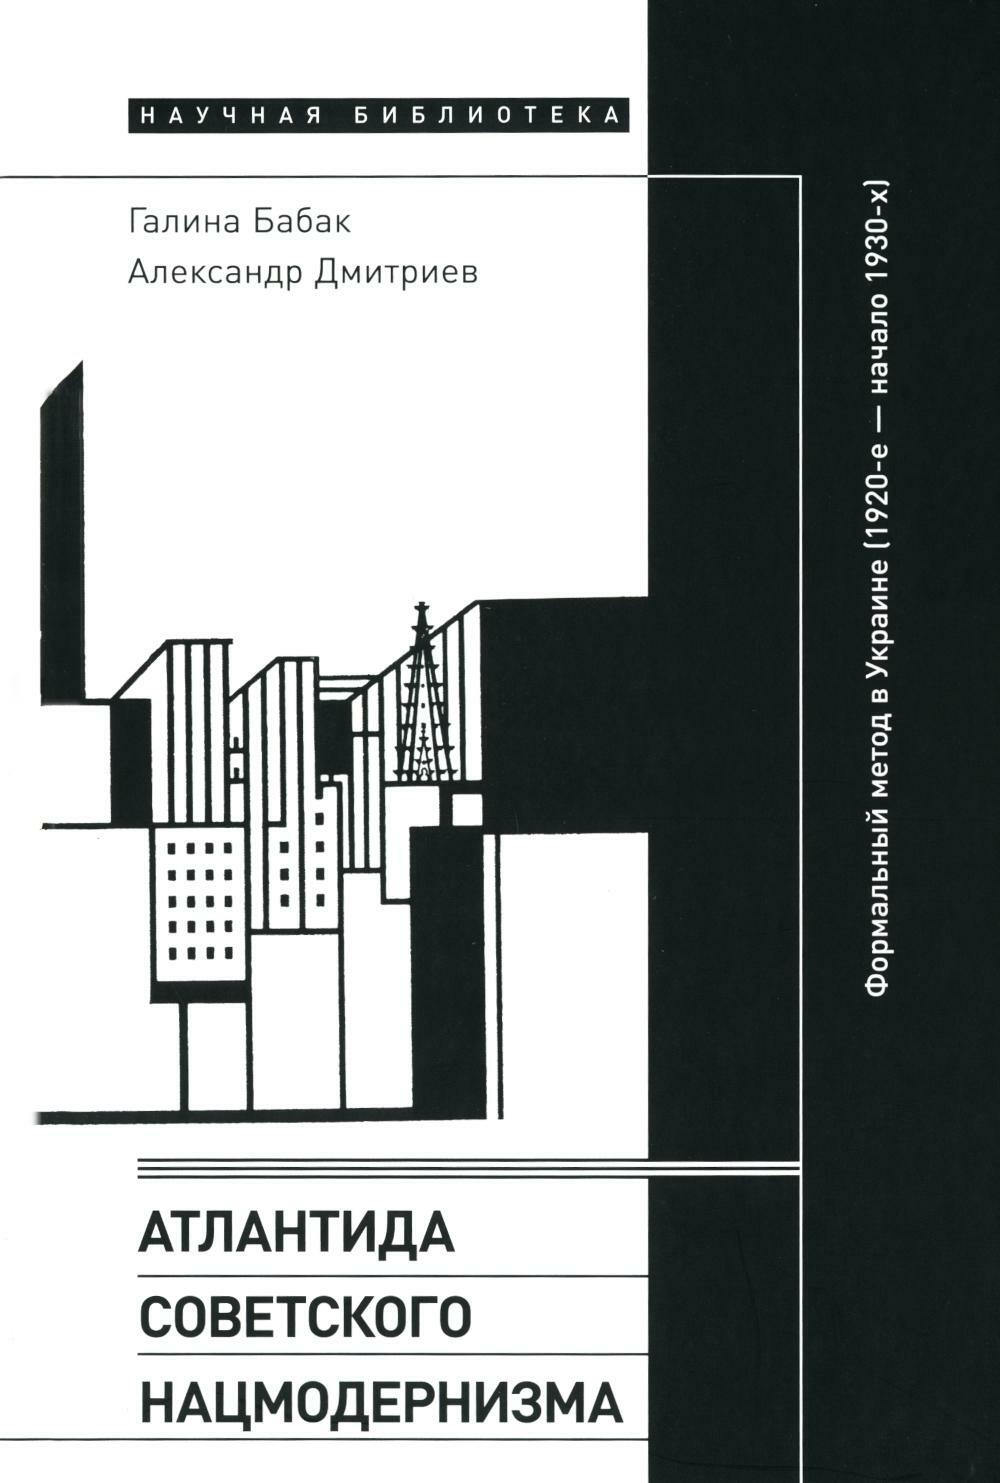 Атлантида советского нацмодернизма: формальный метод в Украине (1920-е — начало 1930-х)